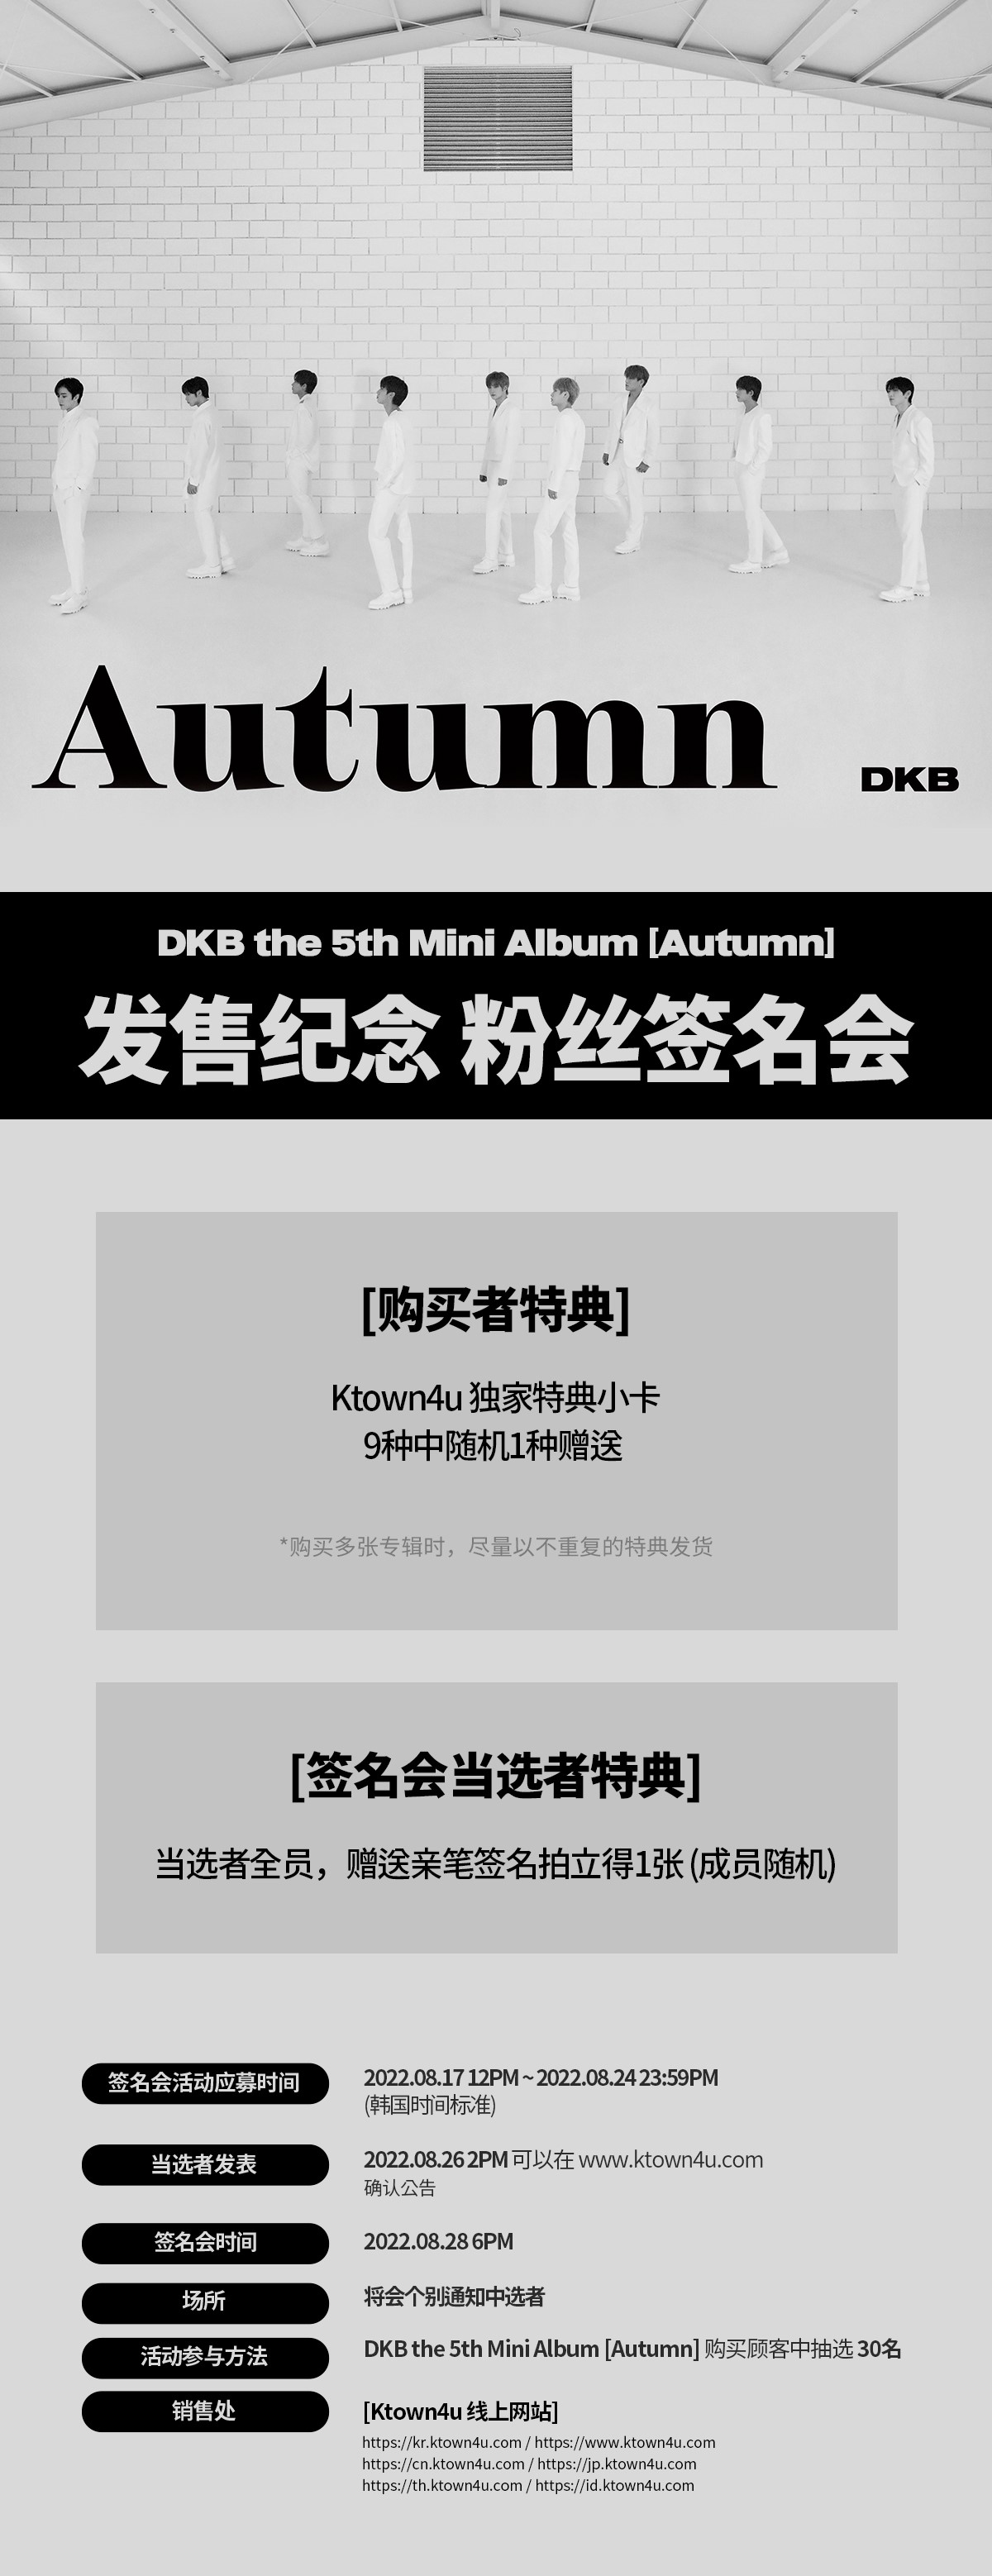 cn.ktown4u.com : event detail_DKB